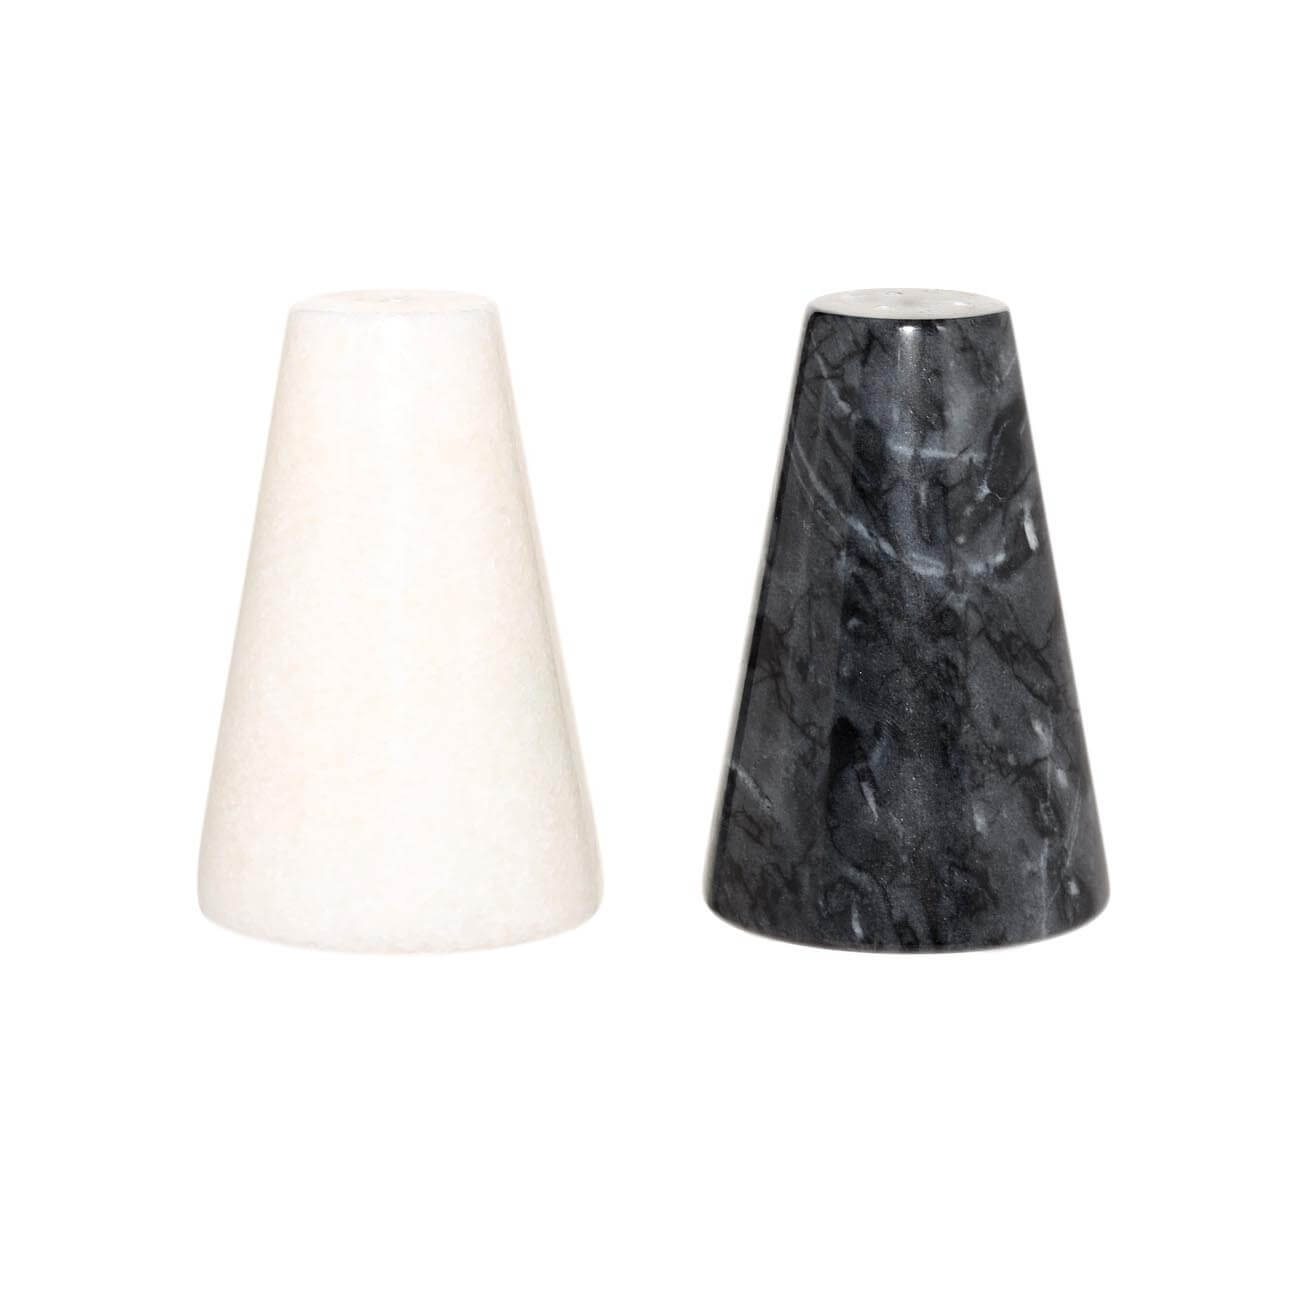 Набор для соли и перца, 9 см, мрамор, белый/черный, Marble изображение № 1